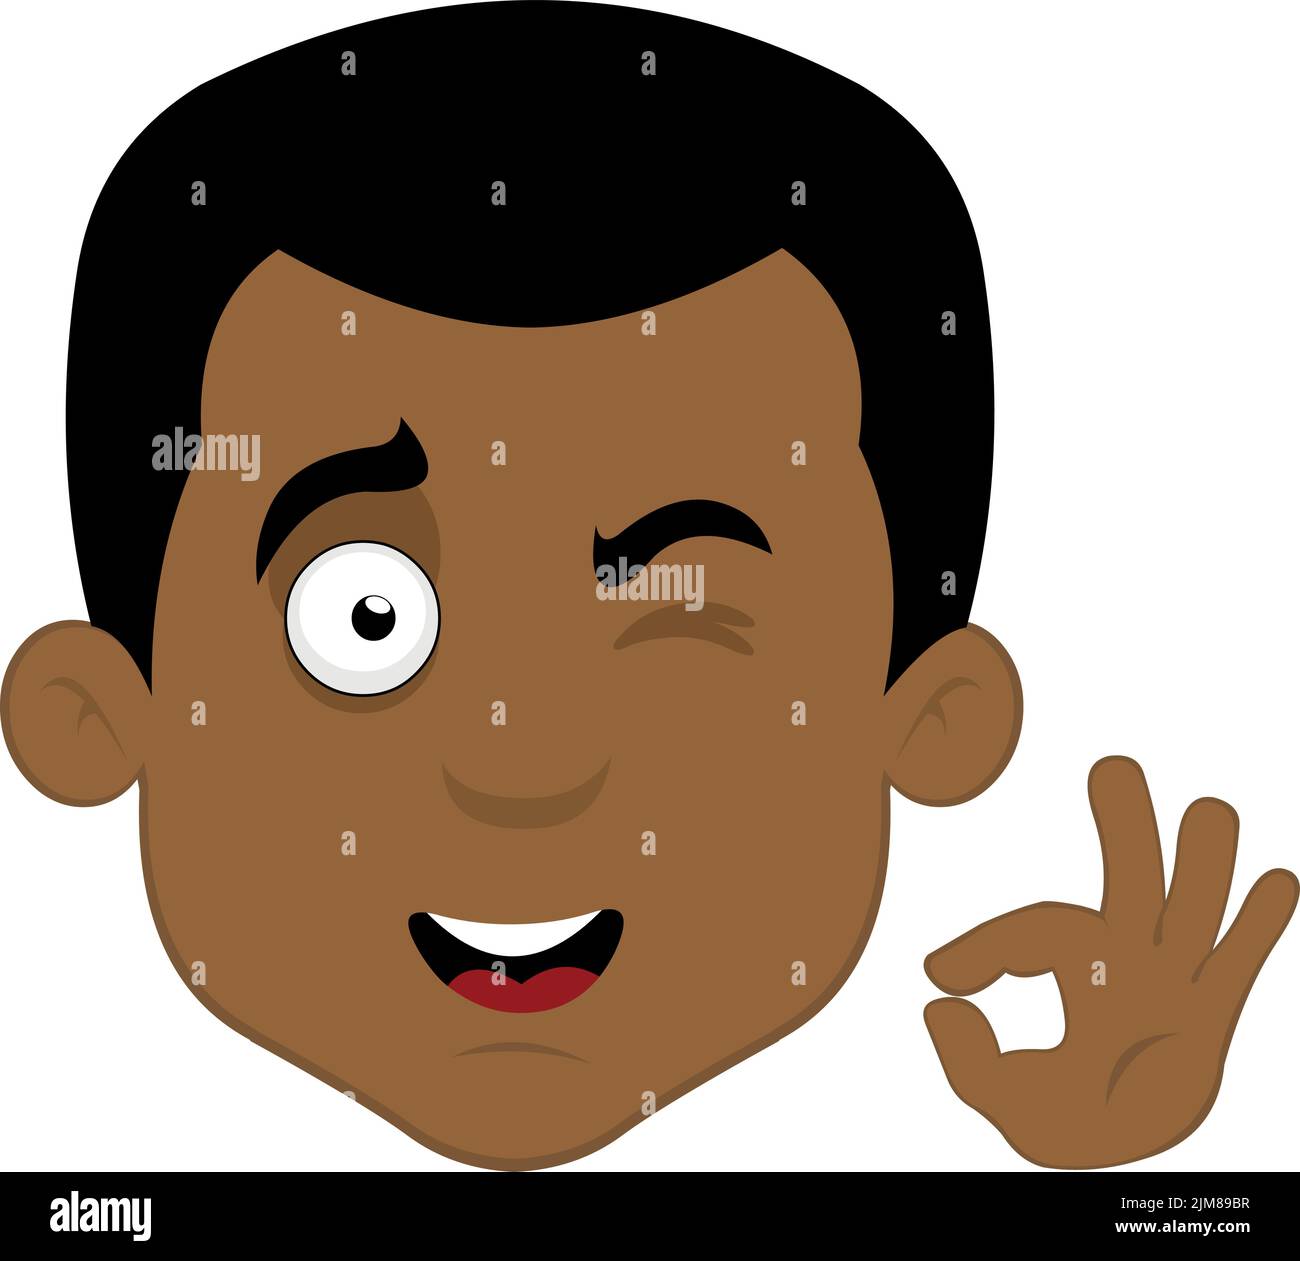 Vektor-Illustration eines Cartoon-Mann Gesicht, mit einem glücklichen Ausdruck und macht die klassische ok oder perfekte Geste mit seiner Hand Stock Vektor